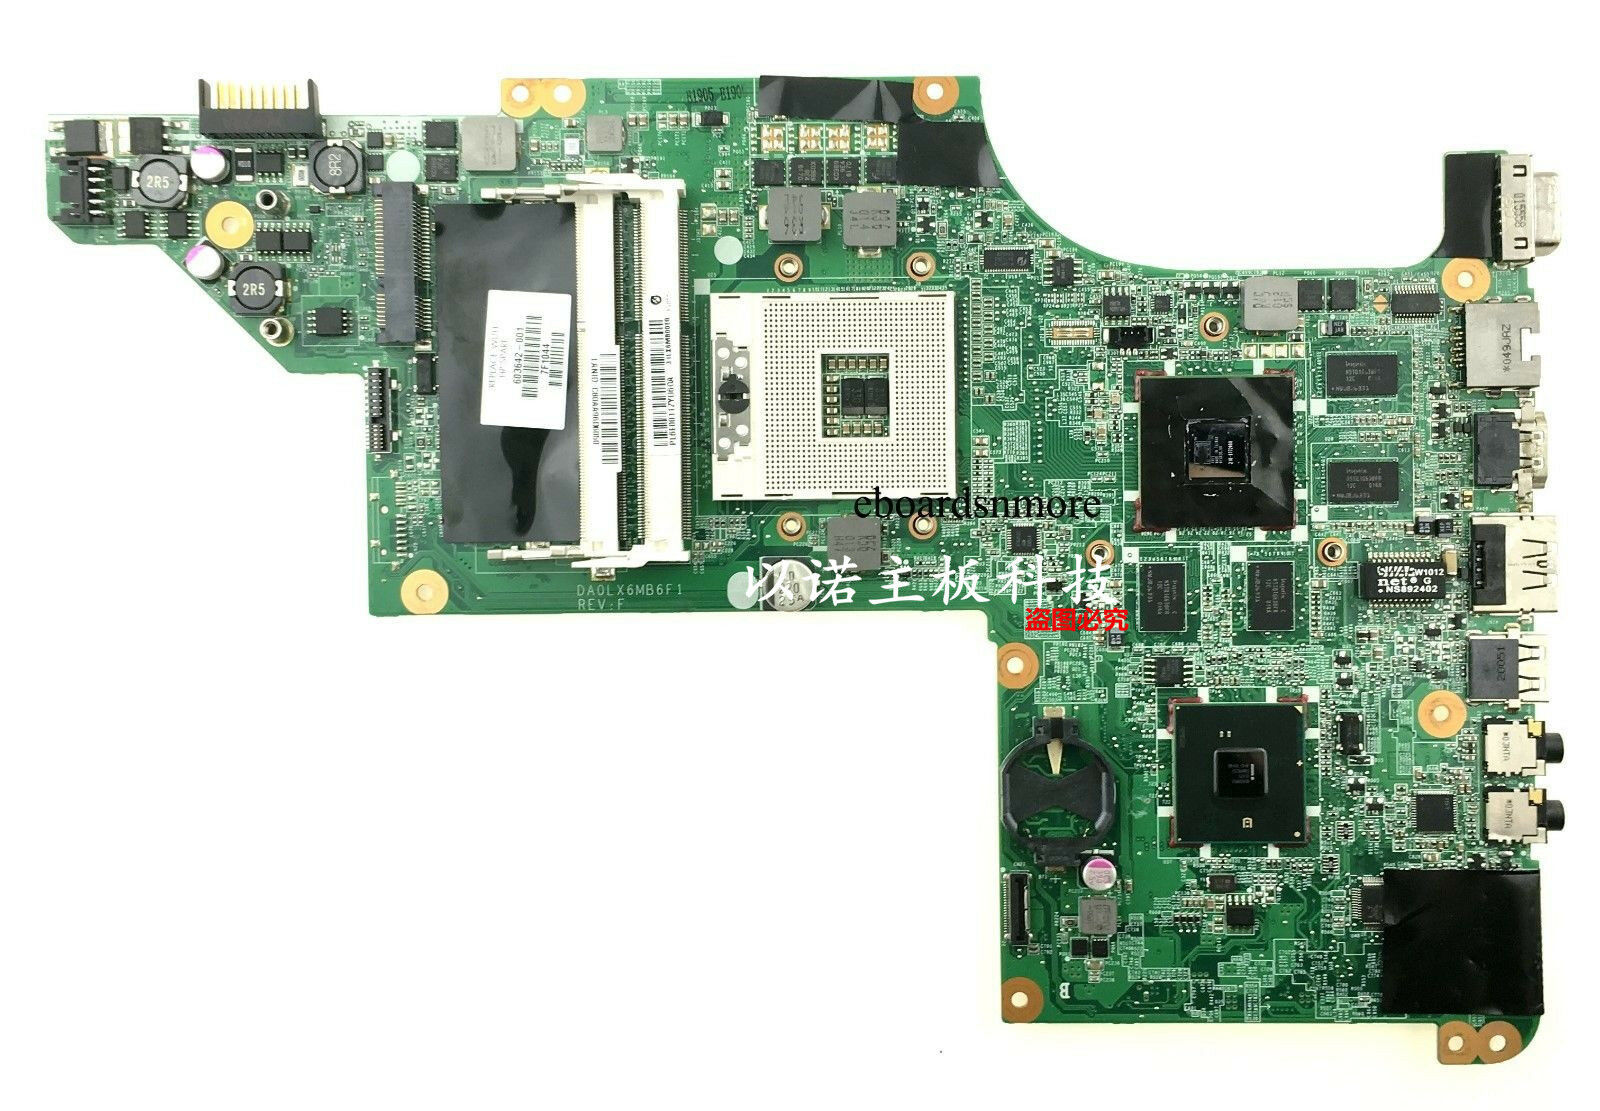 603642-001 Intel HM55 Motherboard for HP DV6-3000 laptop, HDMI, ATI 5650, DDR3, DA0LX6MB6F1 RE: F Intel I-ser